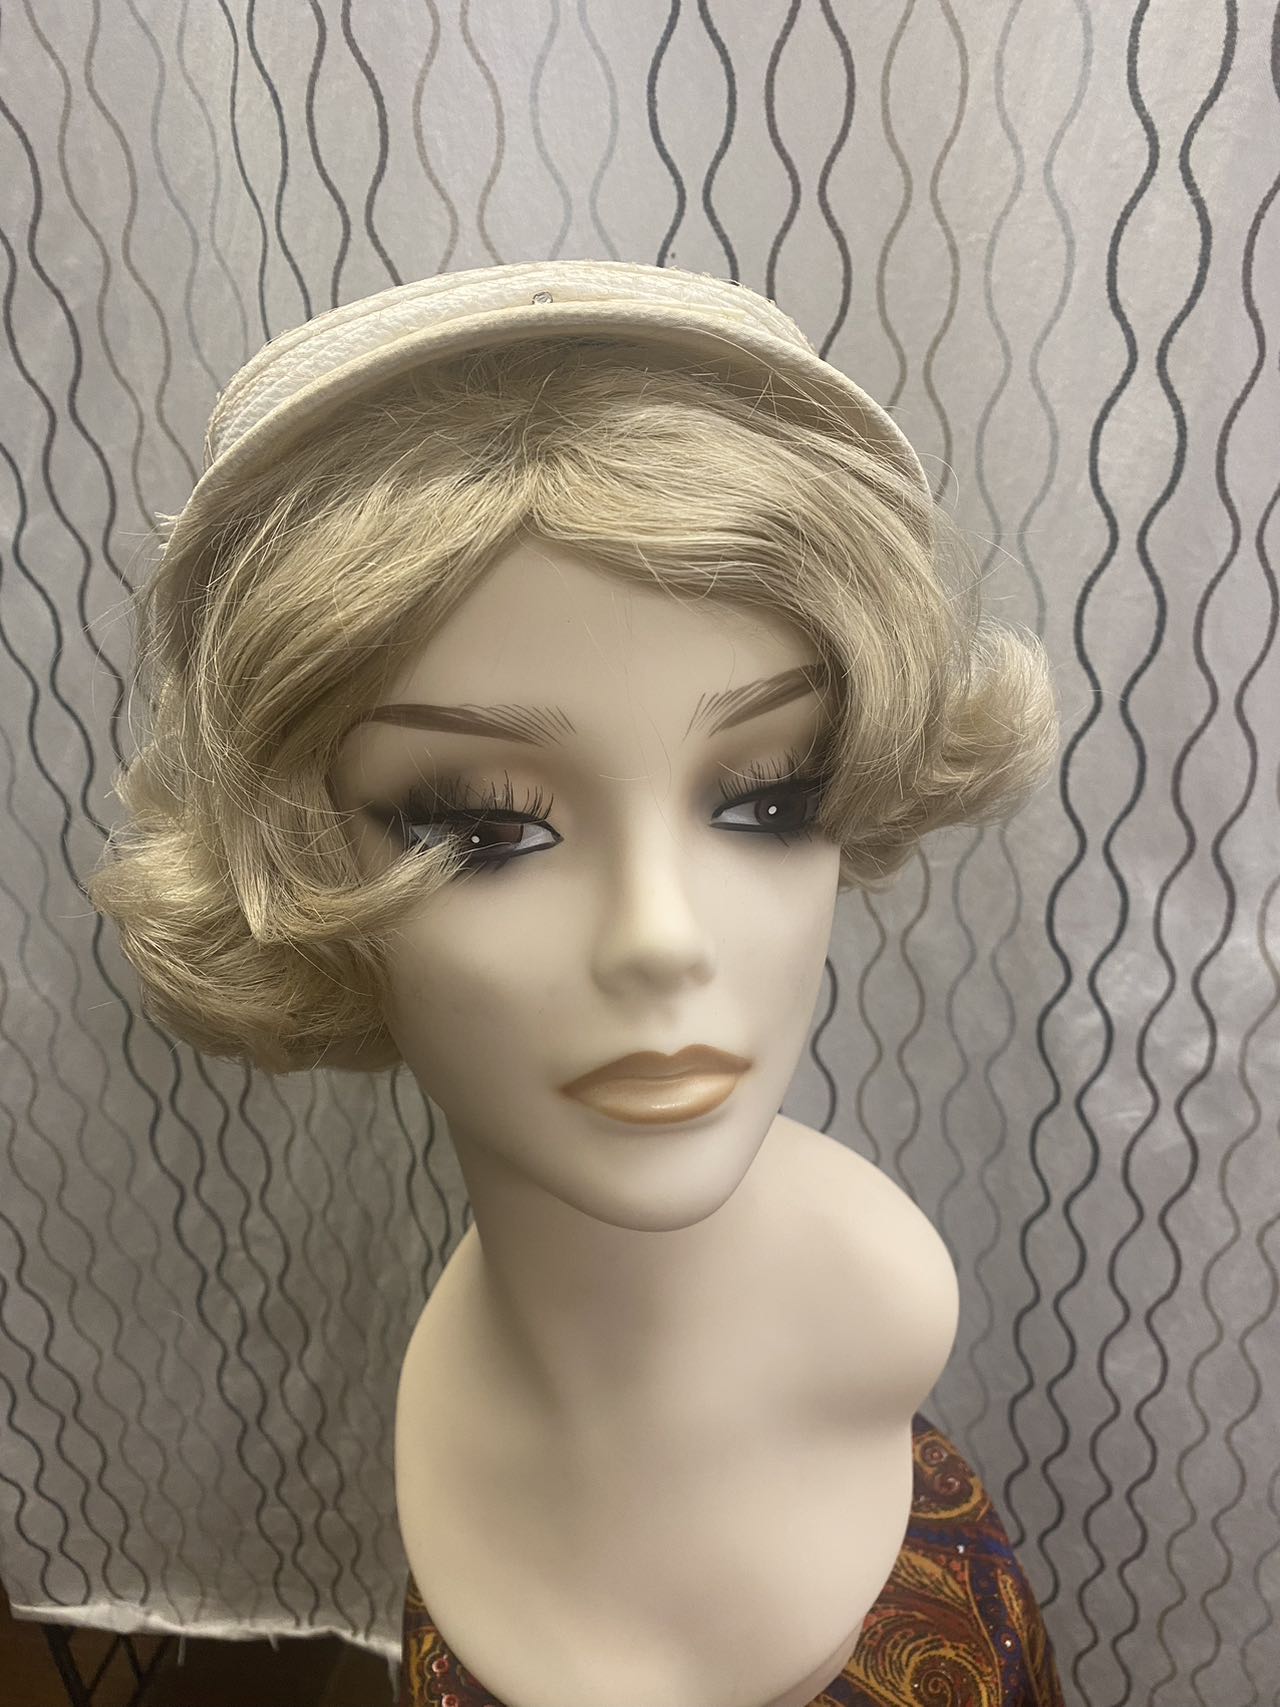 1950s women white pique hat with net tir